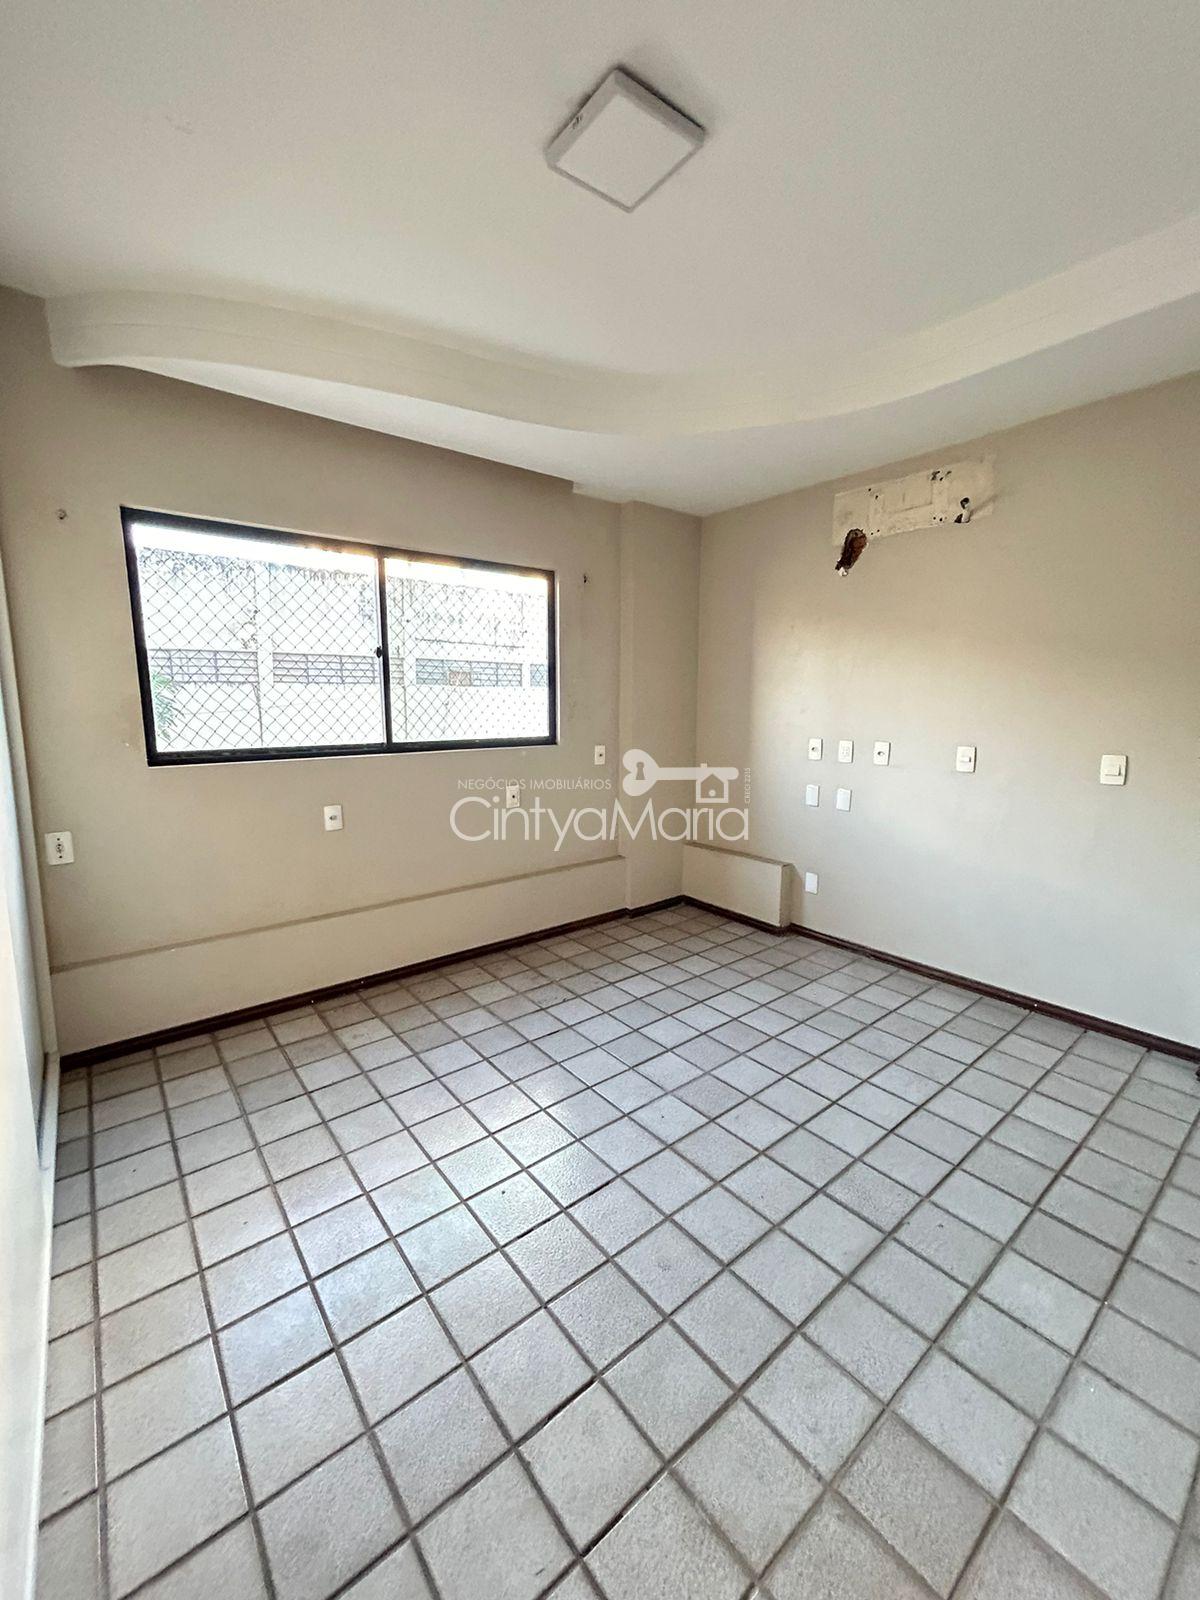 Apartamento, 3 quartos, 160 m² - Foto 4